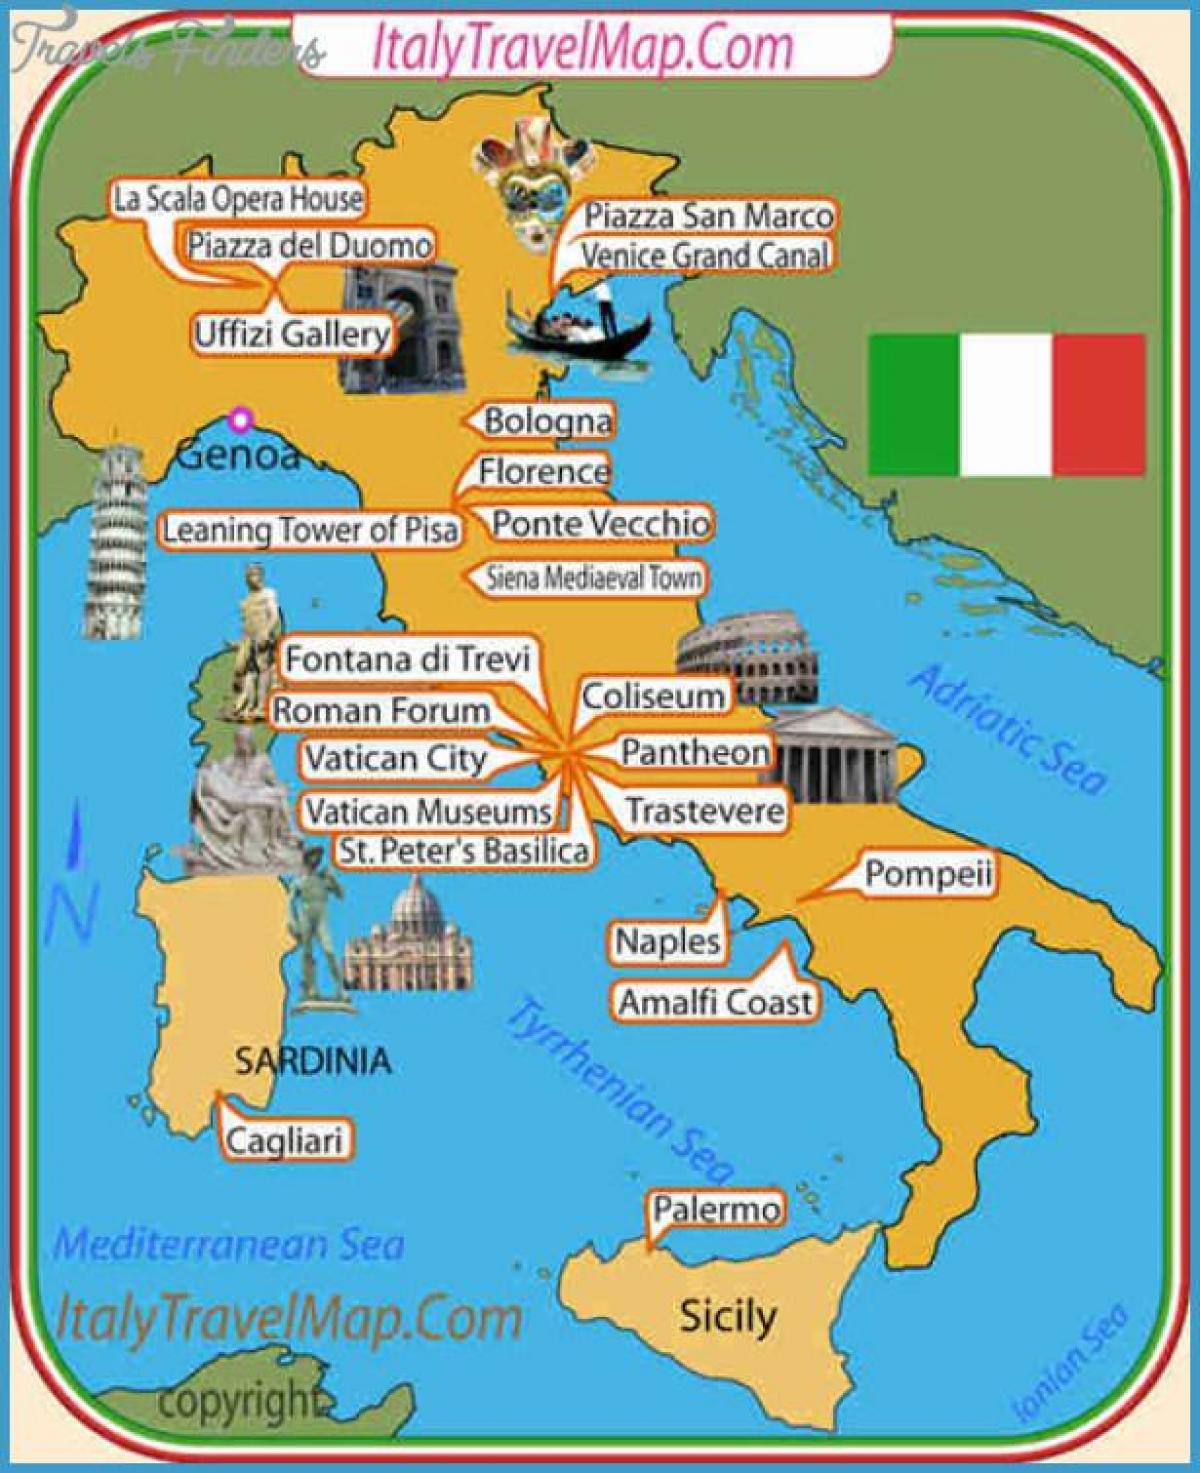 Italia attrazioni mappa